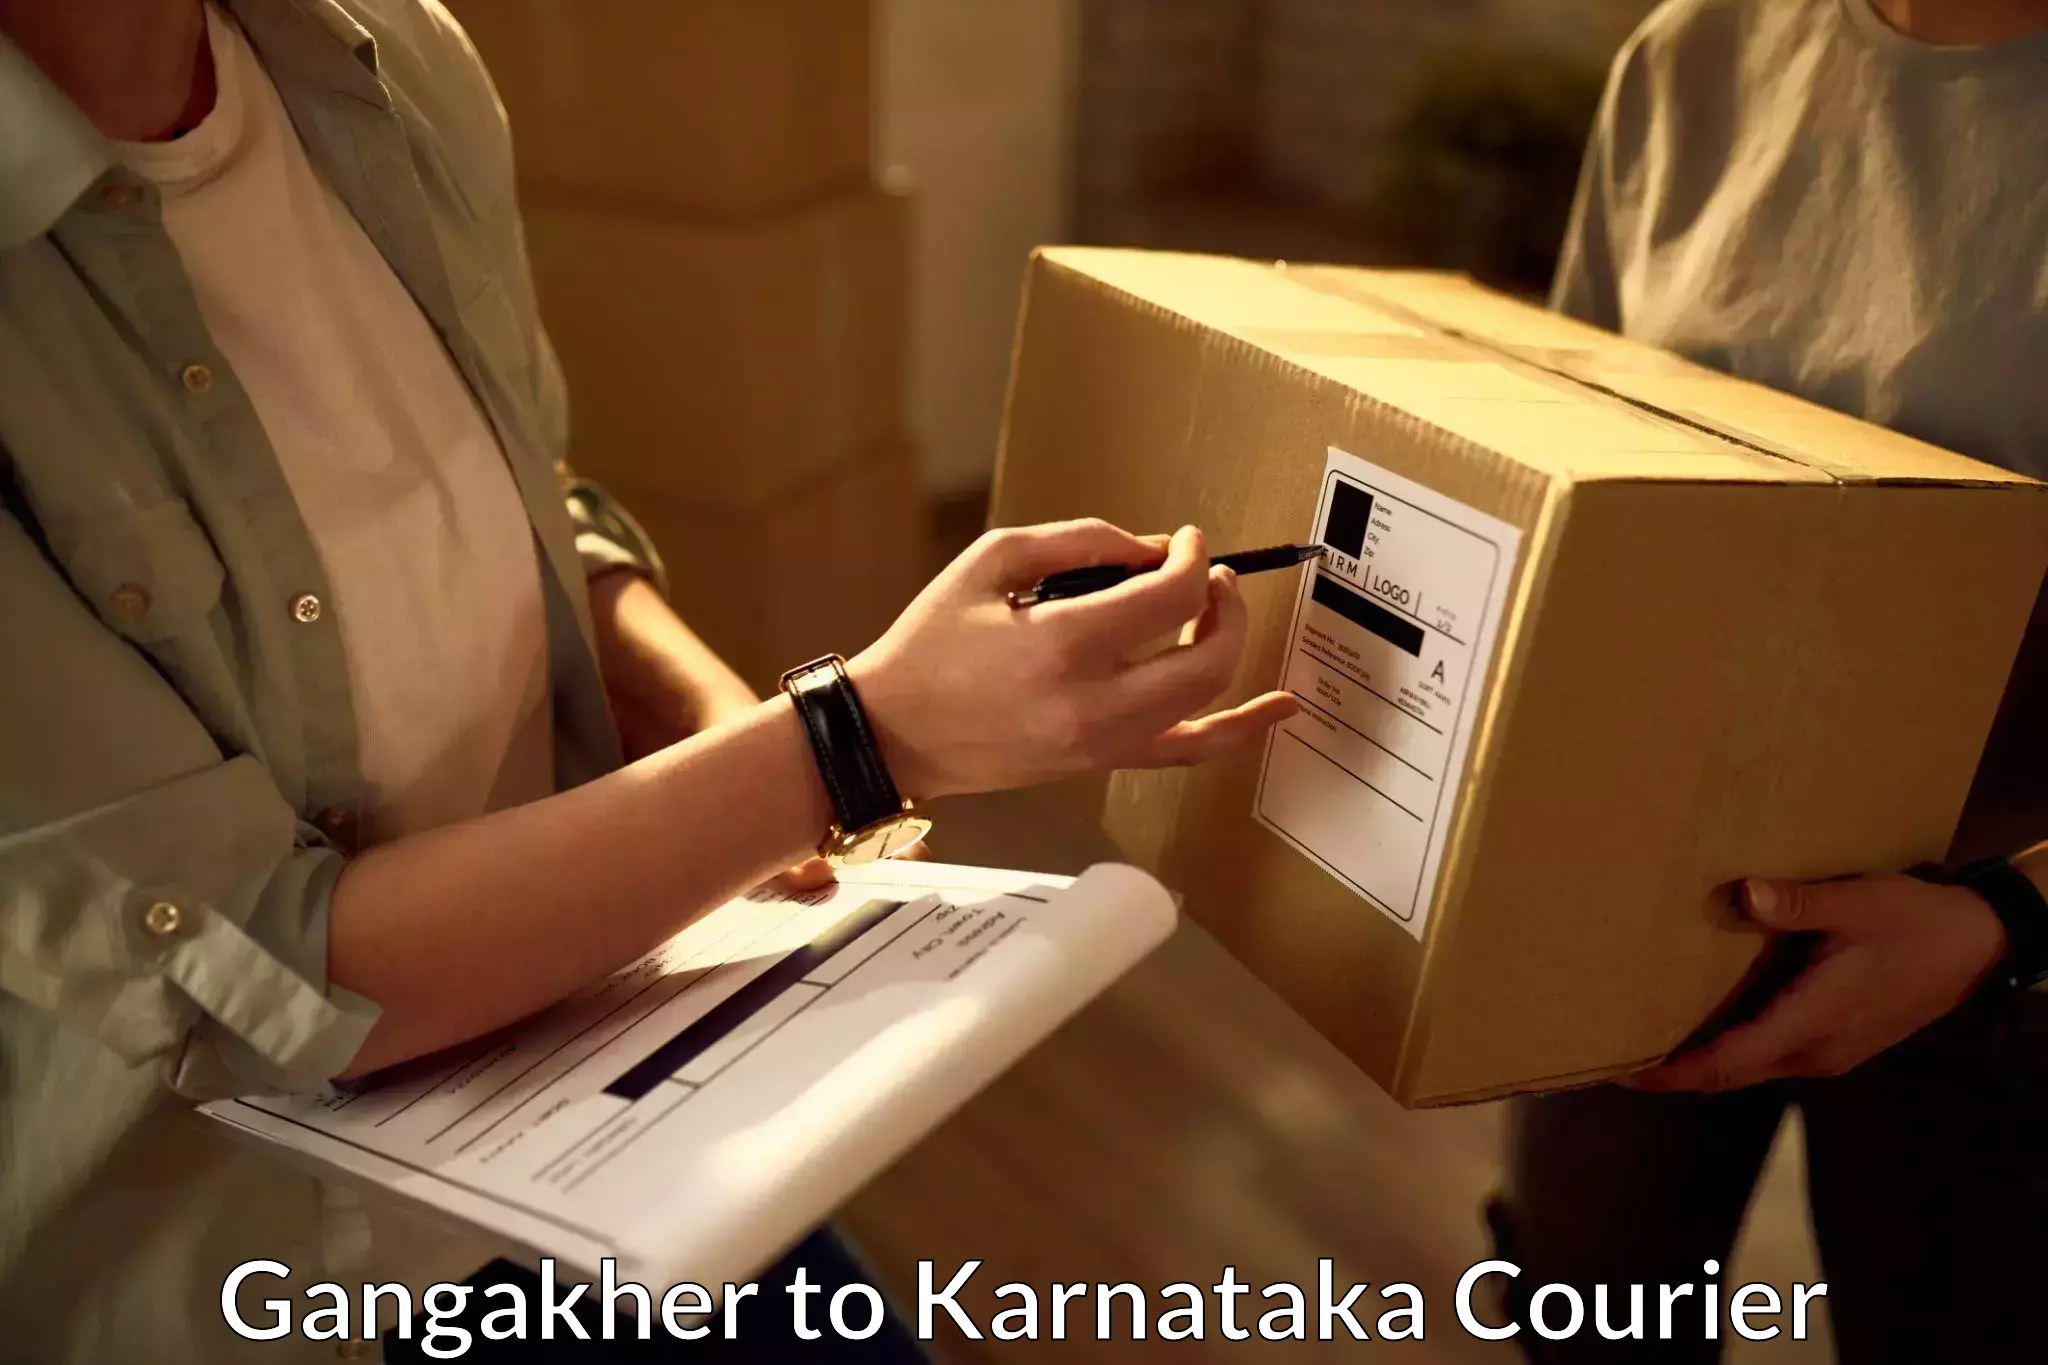 Professional courier handling Gangakher to Nagamangala